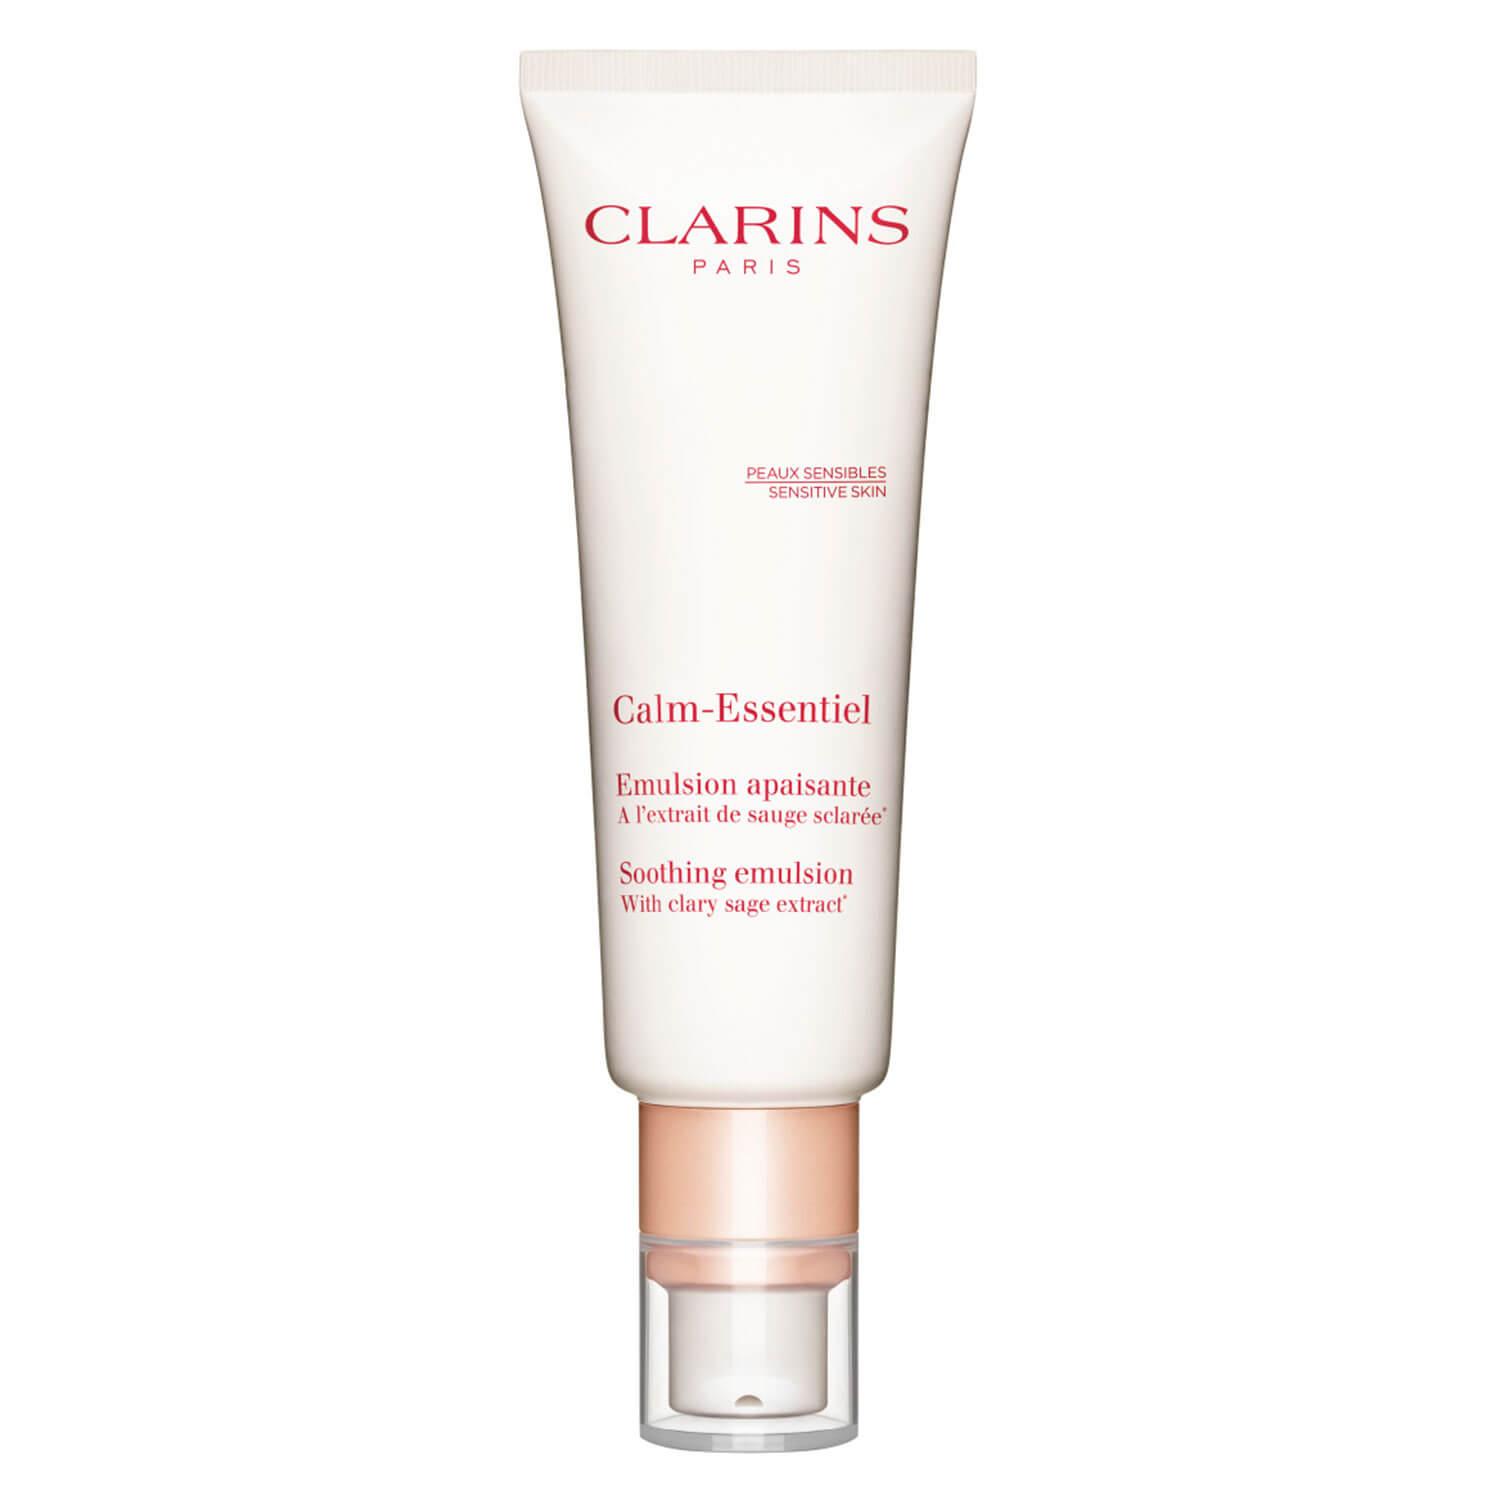 Clarins Skin - Emulsion Apaisante Calm-Essentiel